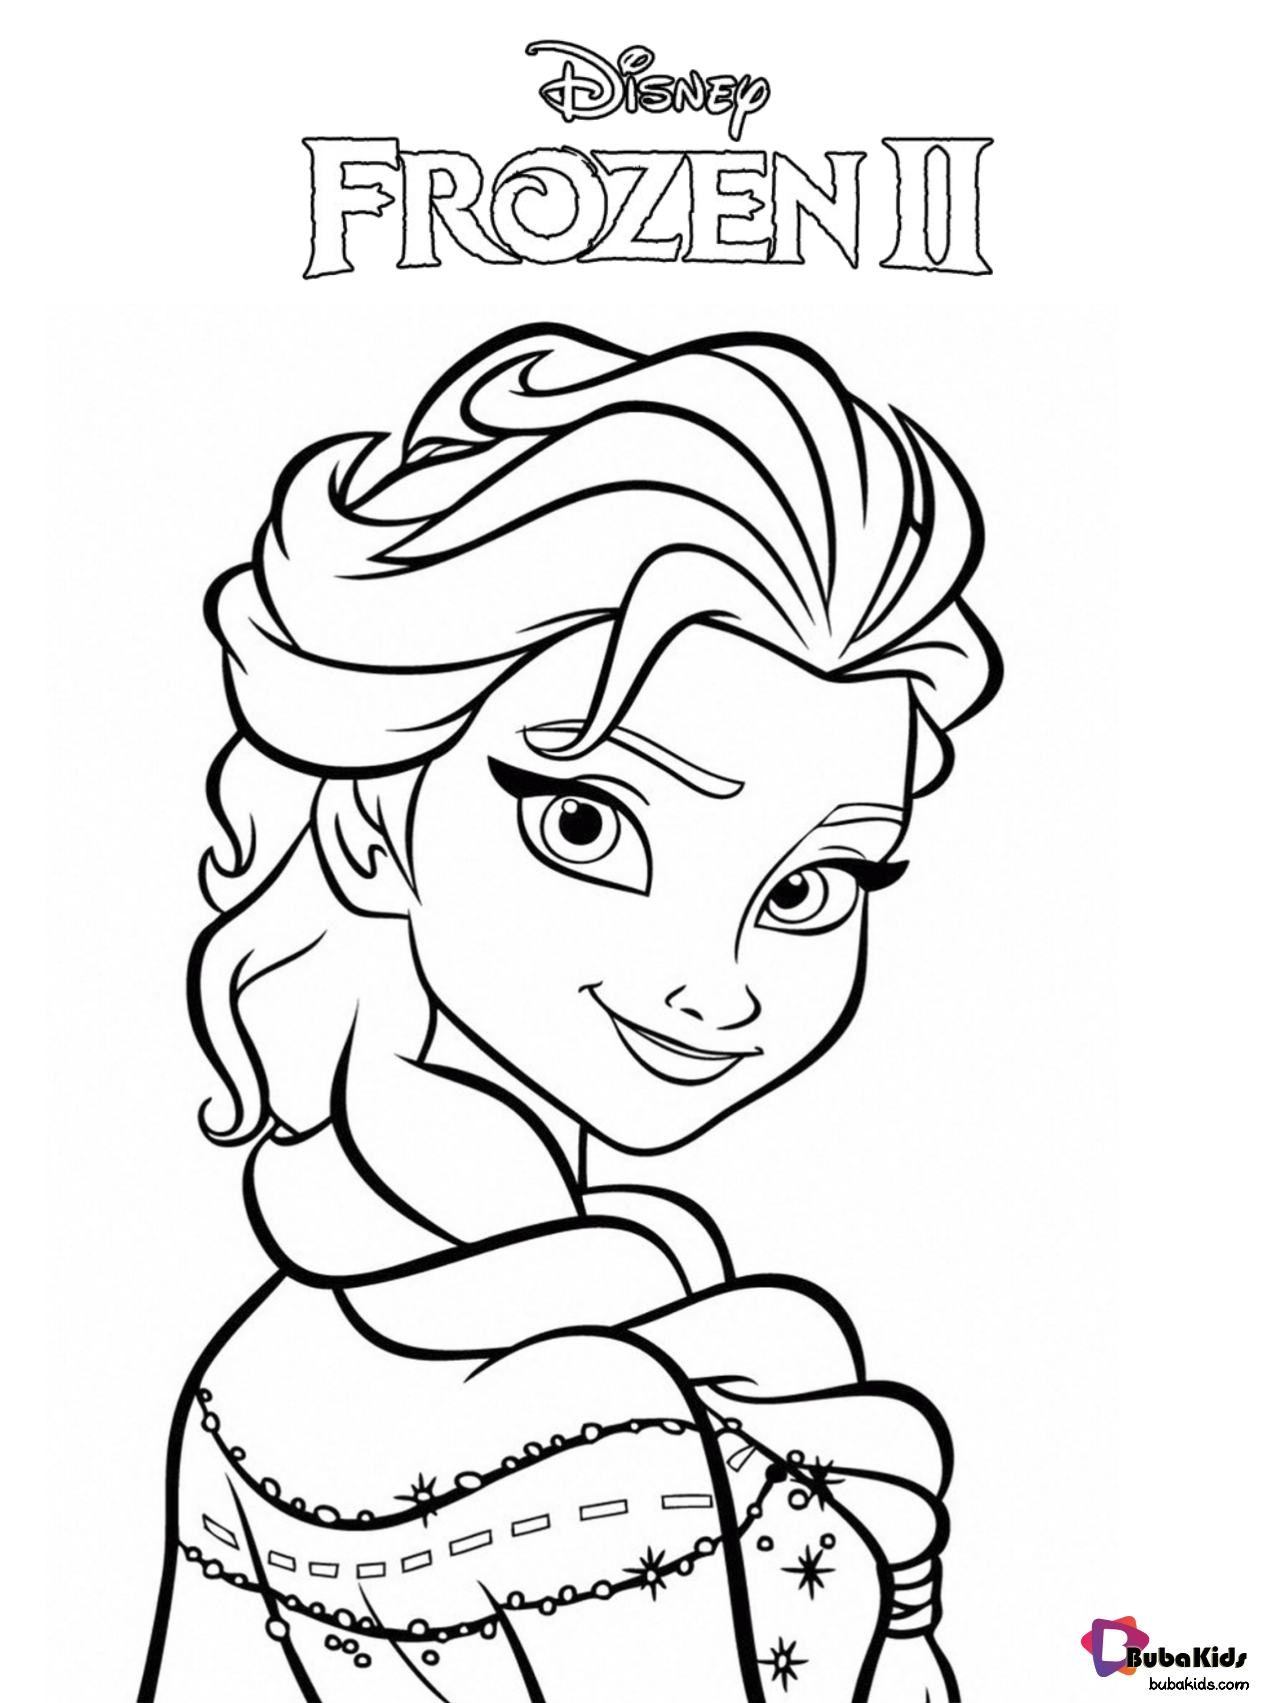 Free Download And Printable Frozen 2 Queen Elsa Coloring Page Elsa Frozen 2 Queen Els